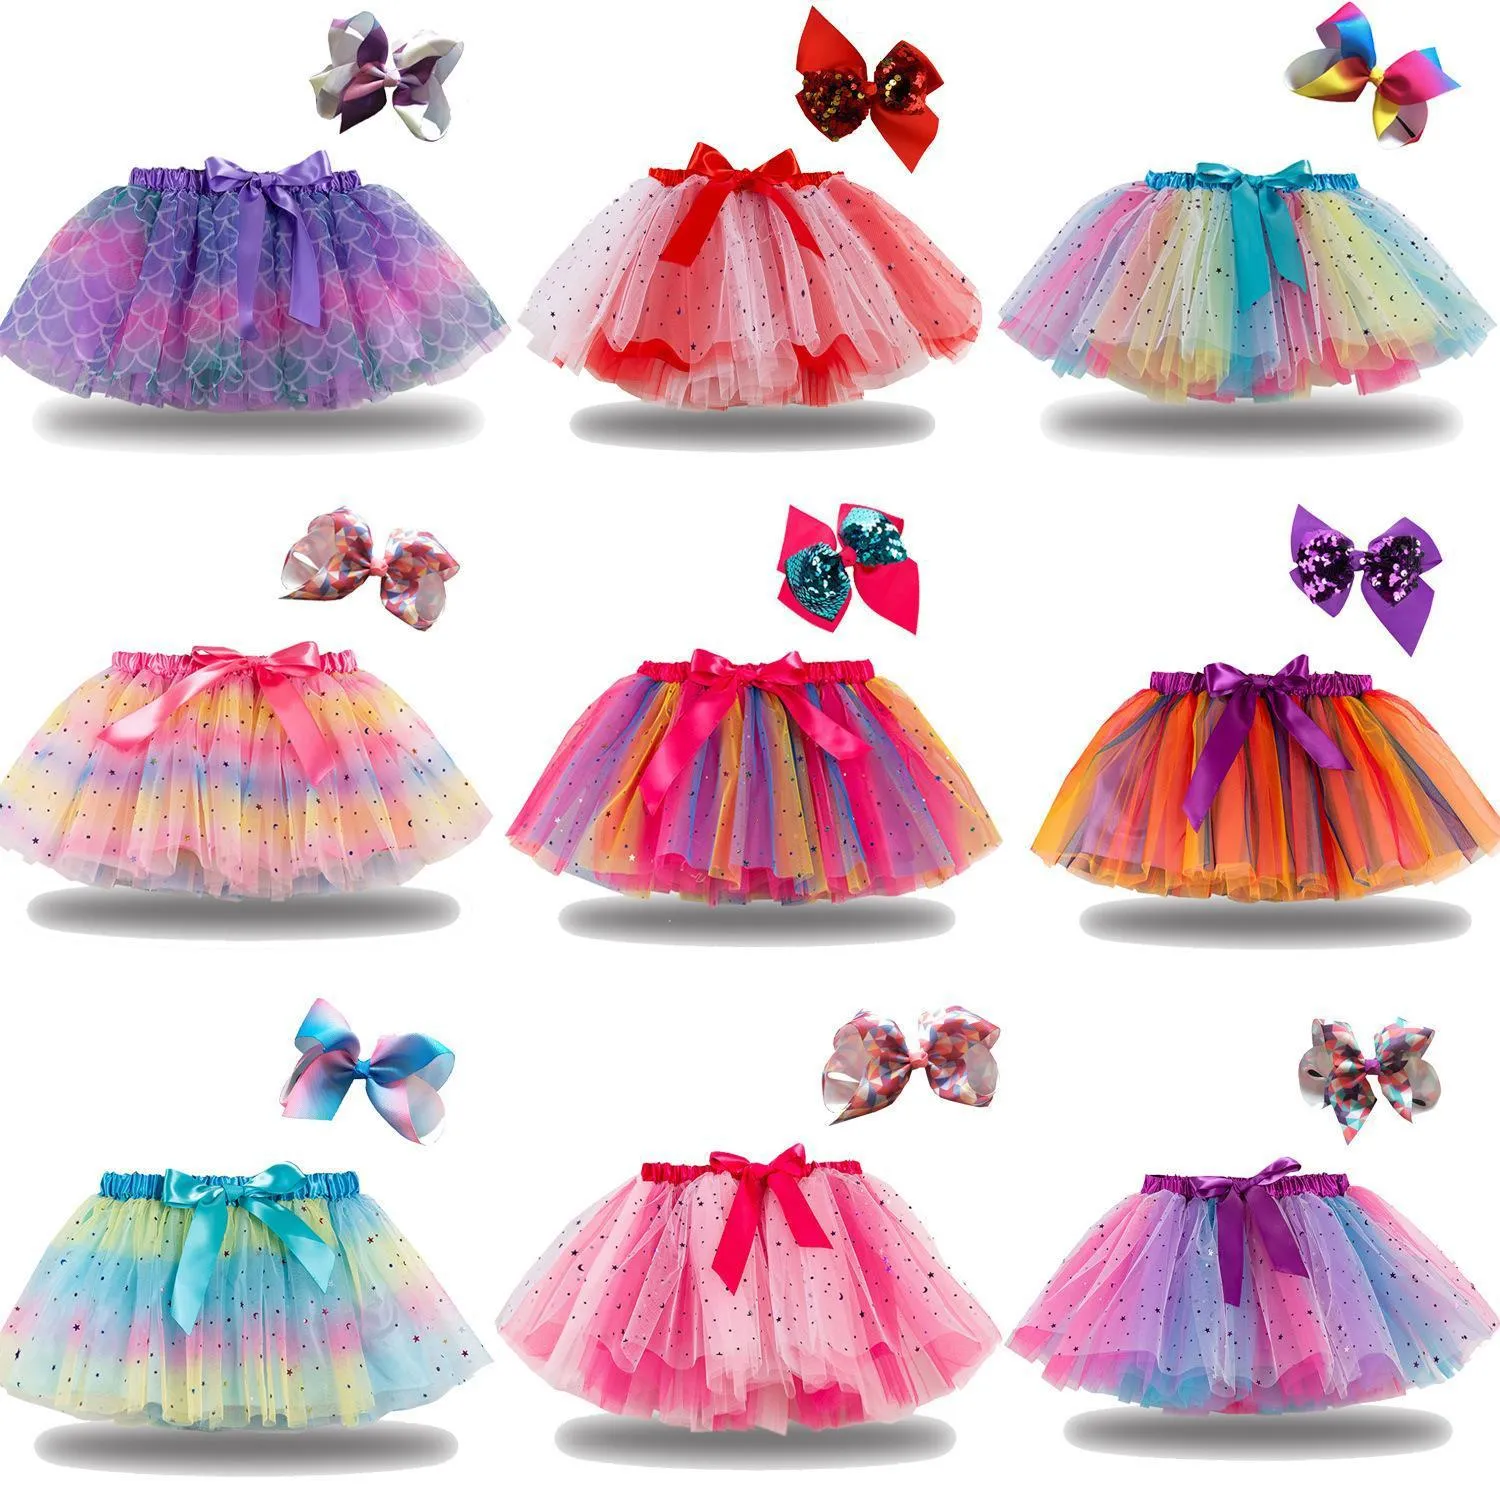 2021 DHL Bebek Kız Tutu Elbise Şeker Gökkuşağı Renk Babies Etekler Kafa Setleri Çocuklar Tatiller Dans Elbiseler Tutus 21 Renkler